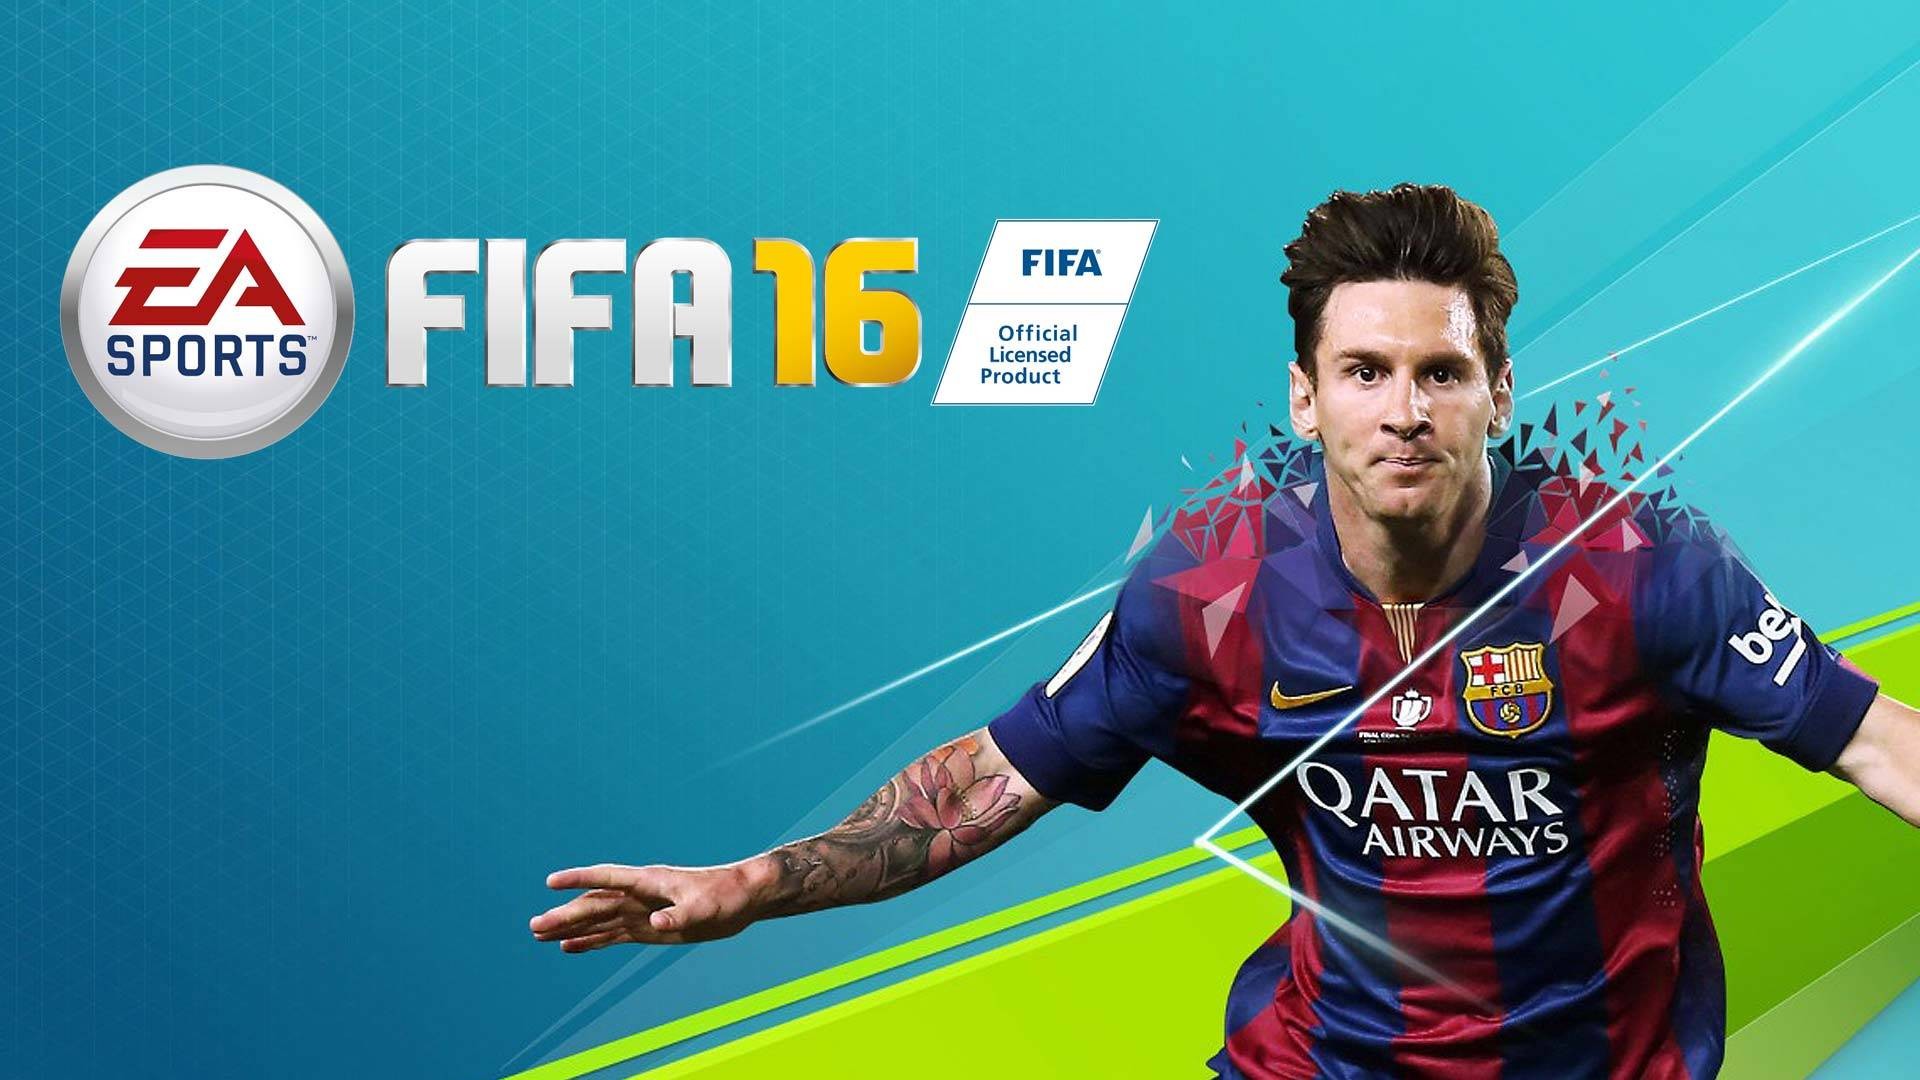 FIFA 16 - Đánh Giá Game